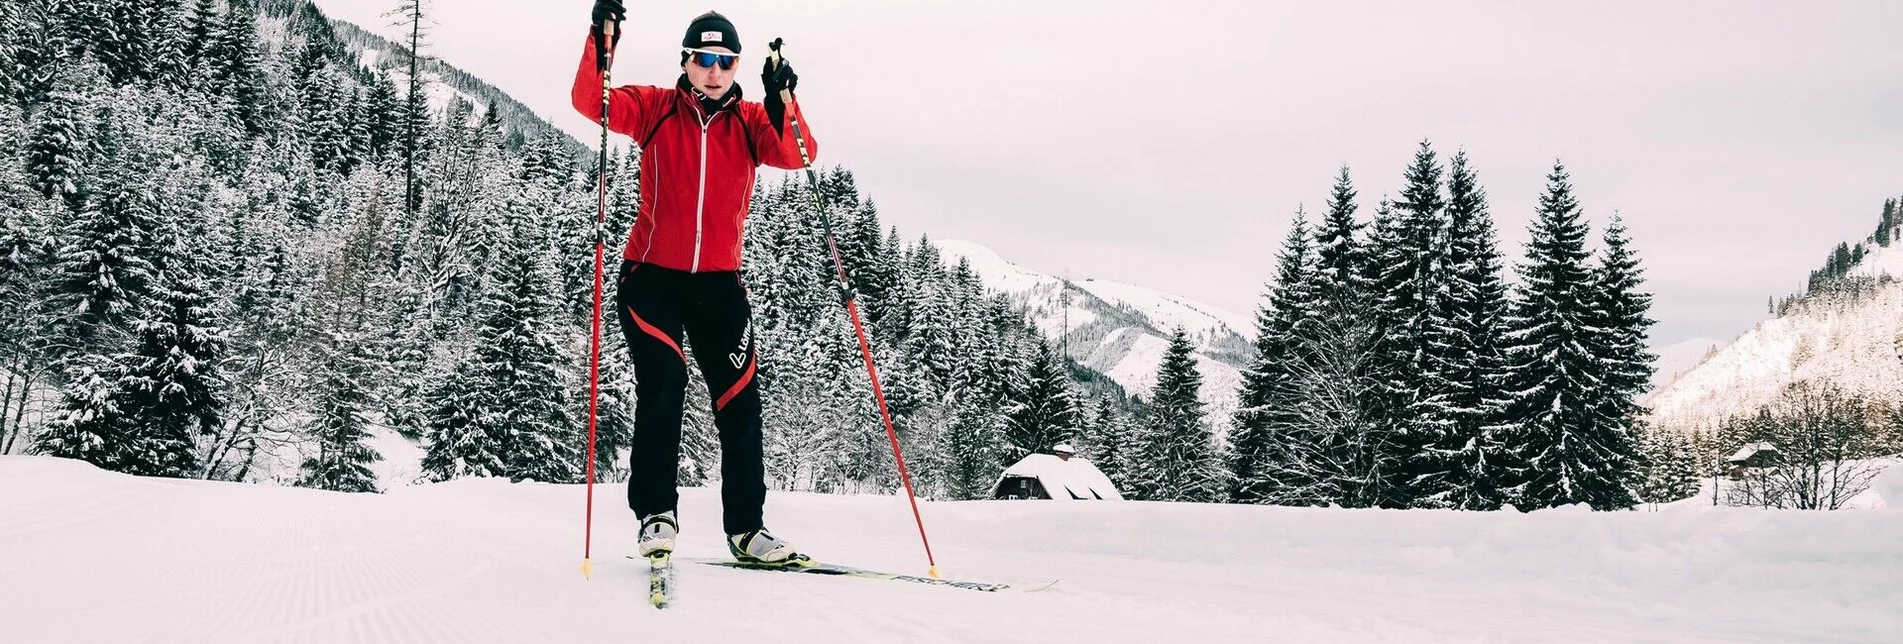 Cross-Country Skiing Loipe Hinterwald - Touren-Impression #1 | © Erlebnisregion Schladming-Dachstein